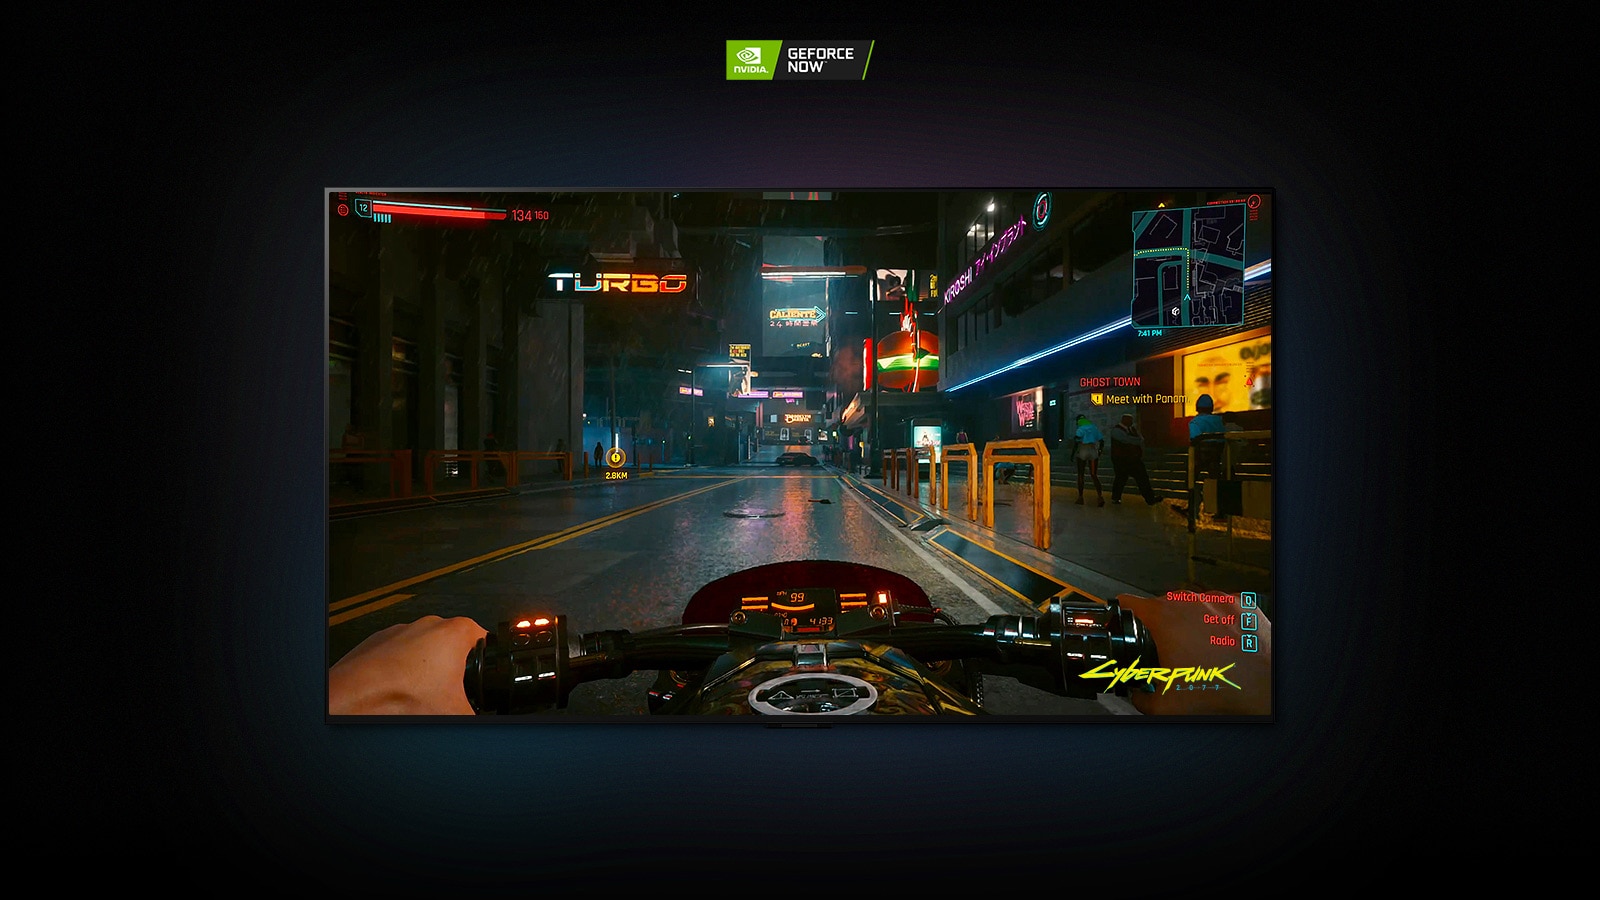 U sceni iz igre Cyberpunk 2077 na zaslonu televizora LG OLED igrač vozi neonsko osvijetljenom ulicom na motociklu